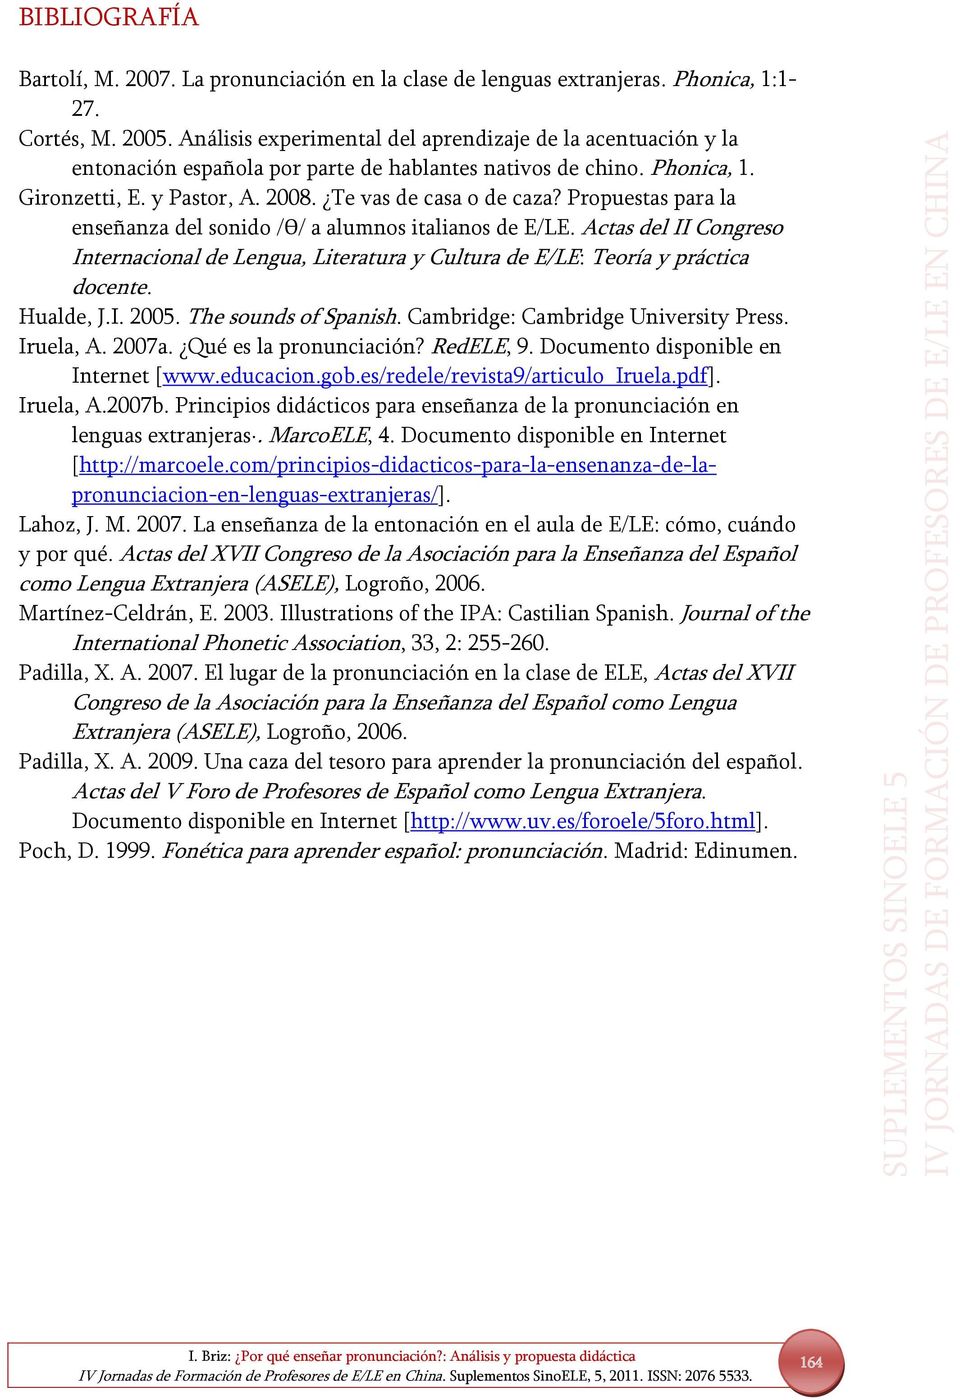 Propuestas para la enseñanza del sonido /ϴ/ a alumnos italianos de E/LE. Actas del II Congreso Internacional de Lengua, Literatura y Cultura de E/LE: Teoría y práctica docente. Hualde, J.I. 2005.